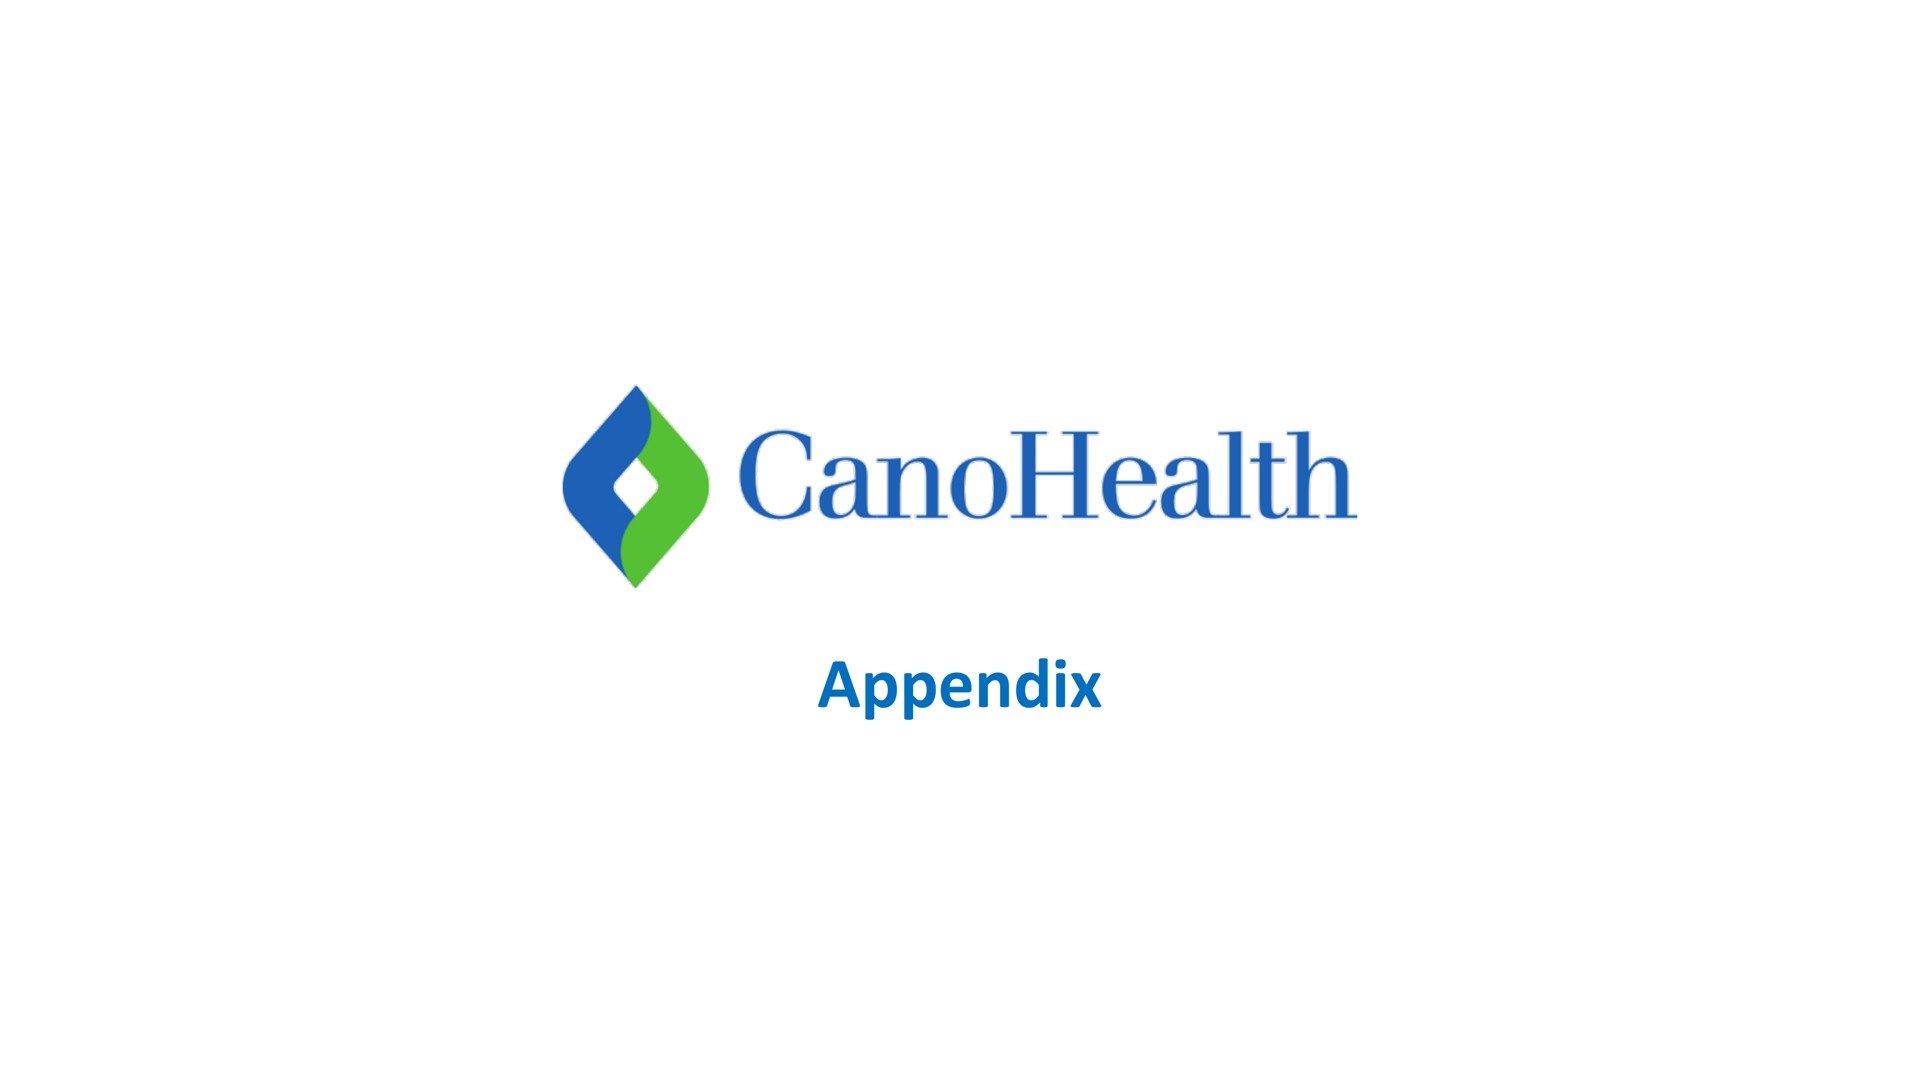 appendix | Cano Health